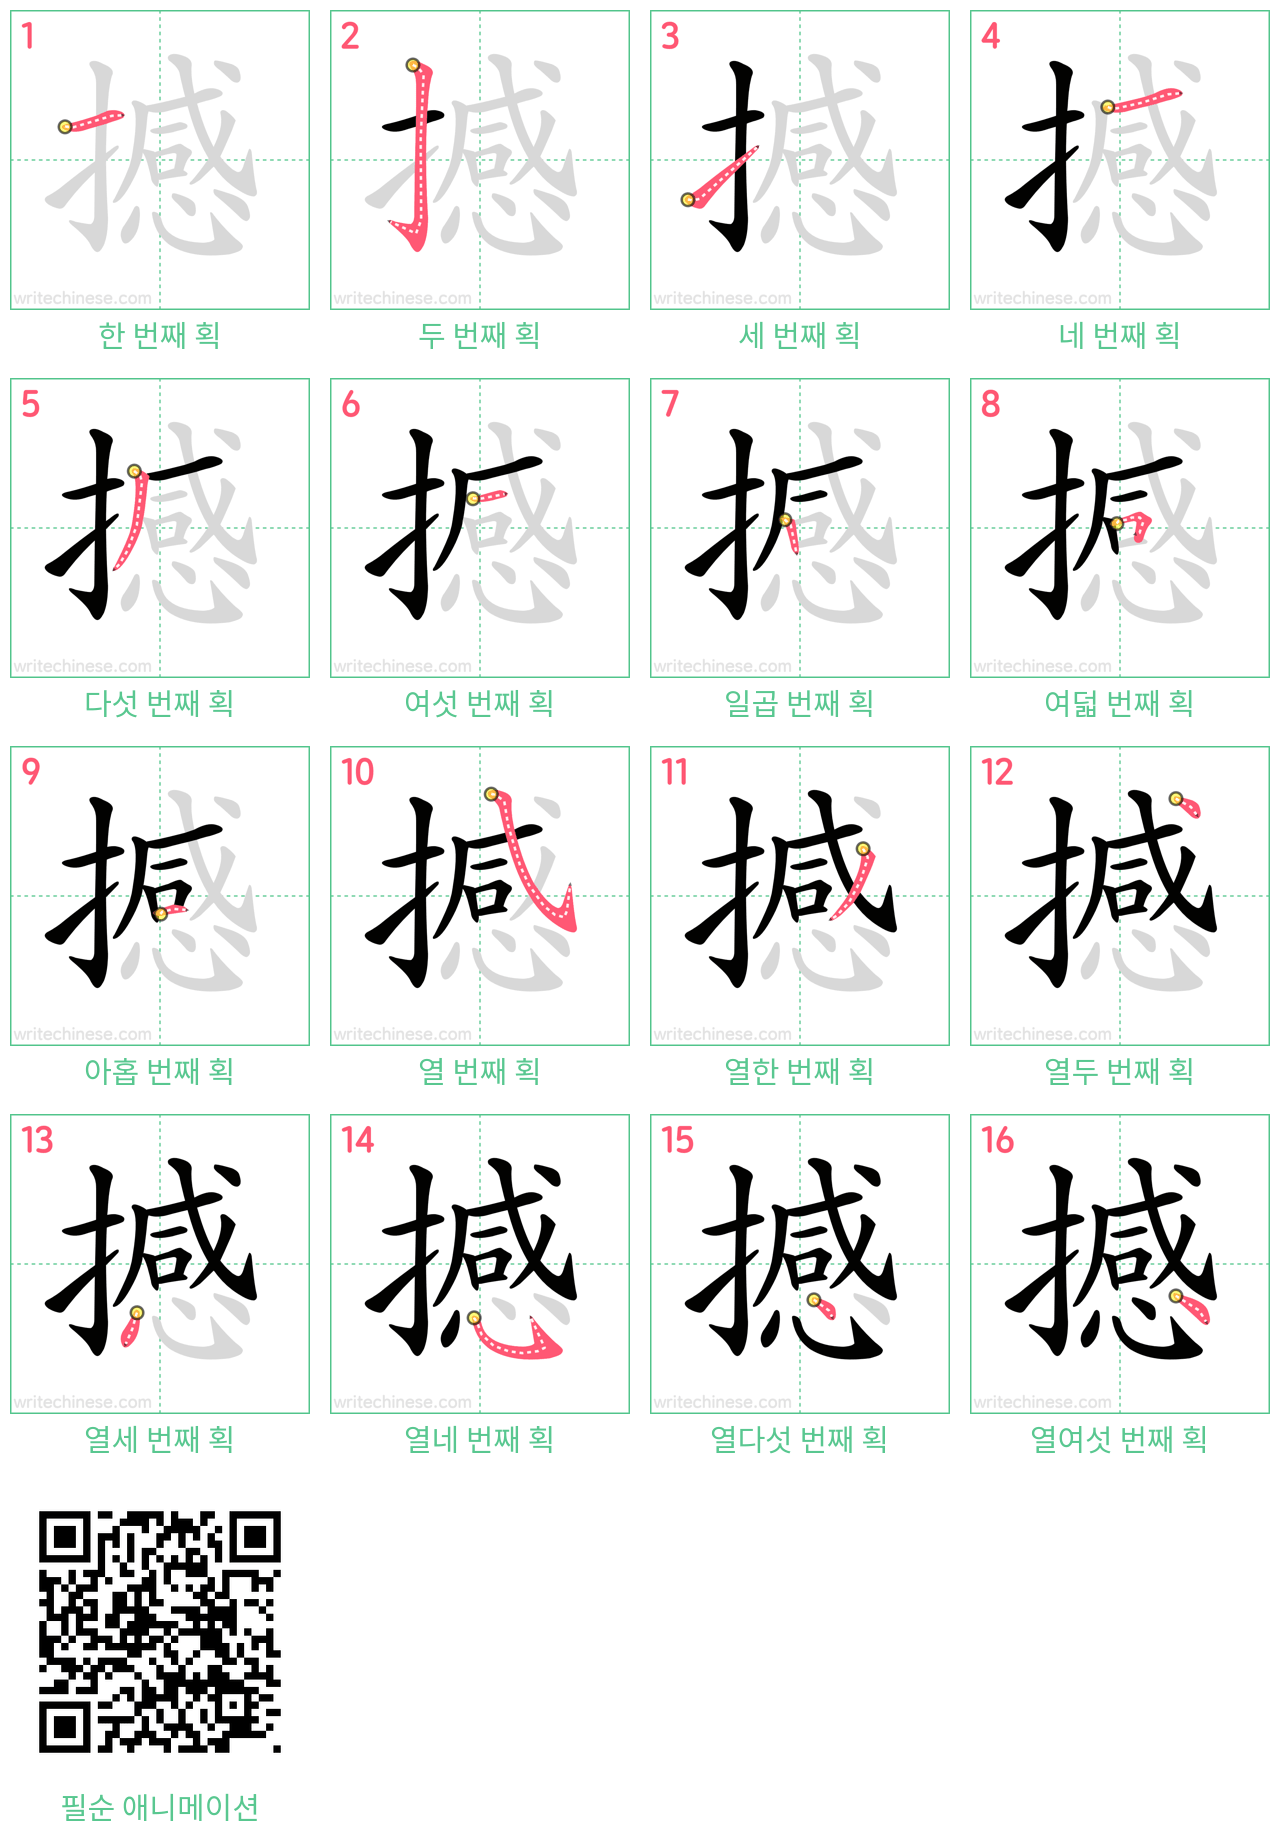 撼 step-by-step stroke order diagrams